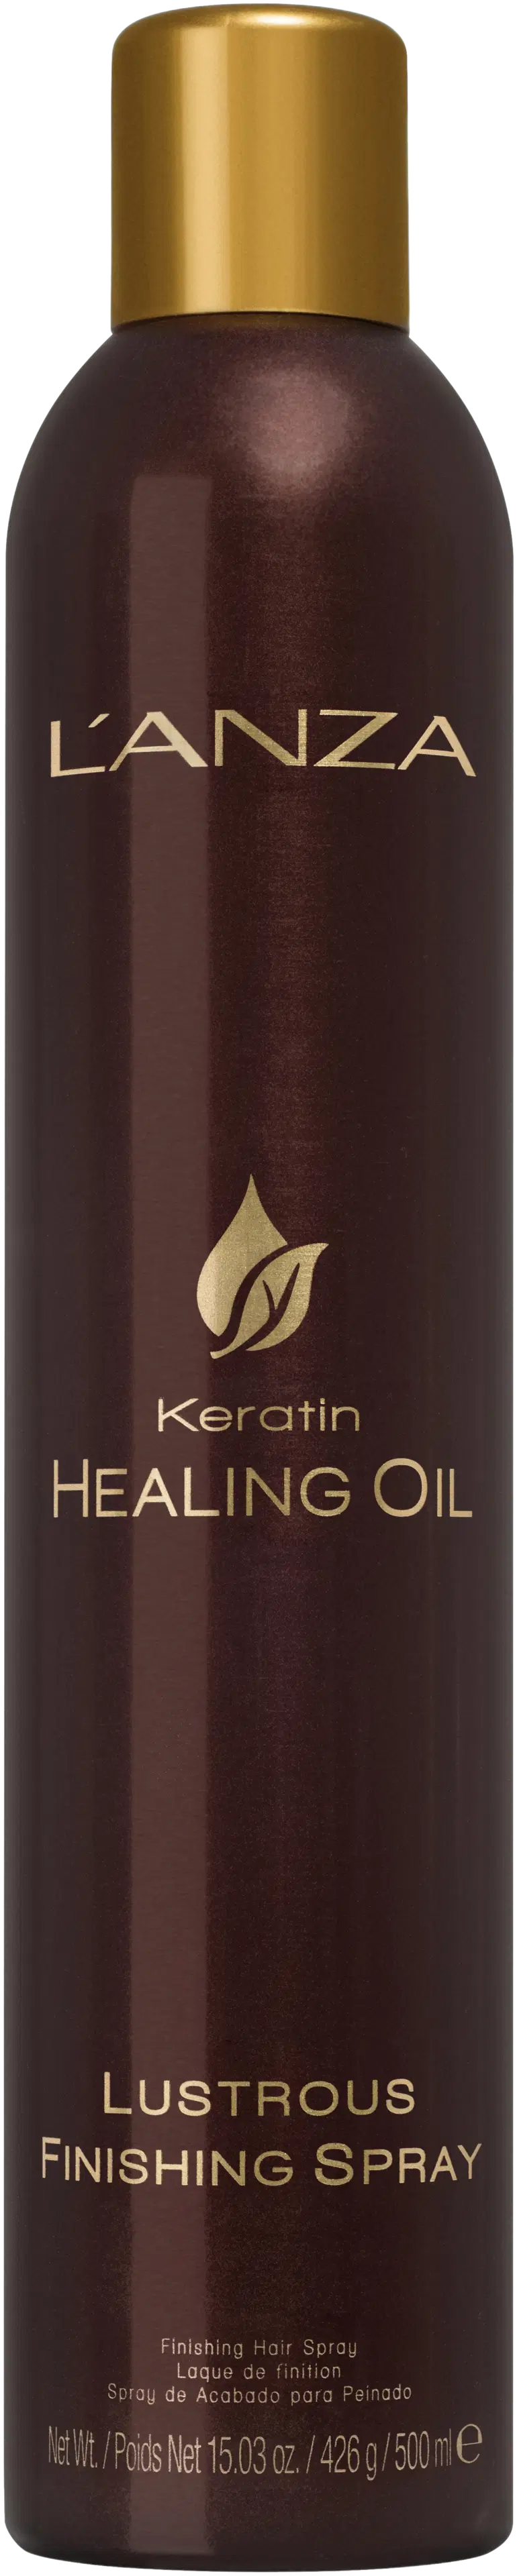 L´ANZA Keratin Healing Oil Lustrous Finishing Spray viimeistelykiinne 500 ml